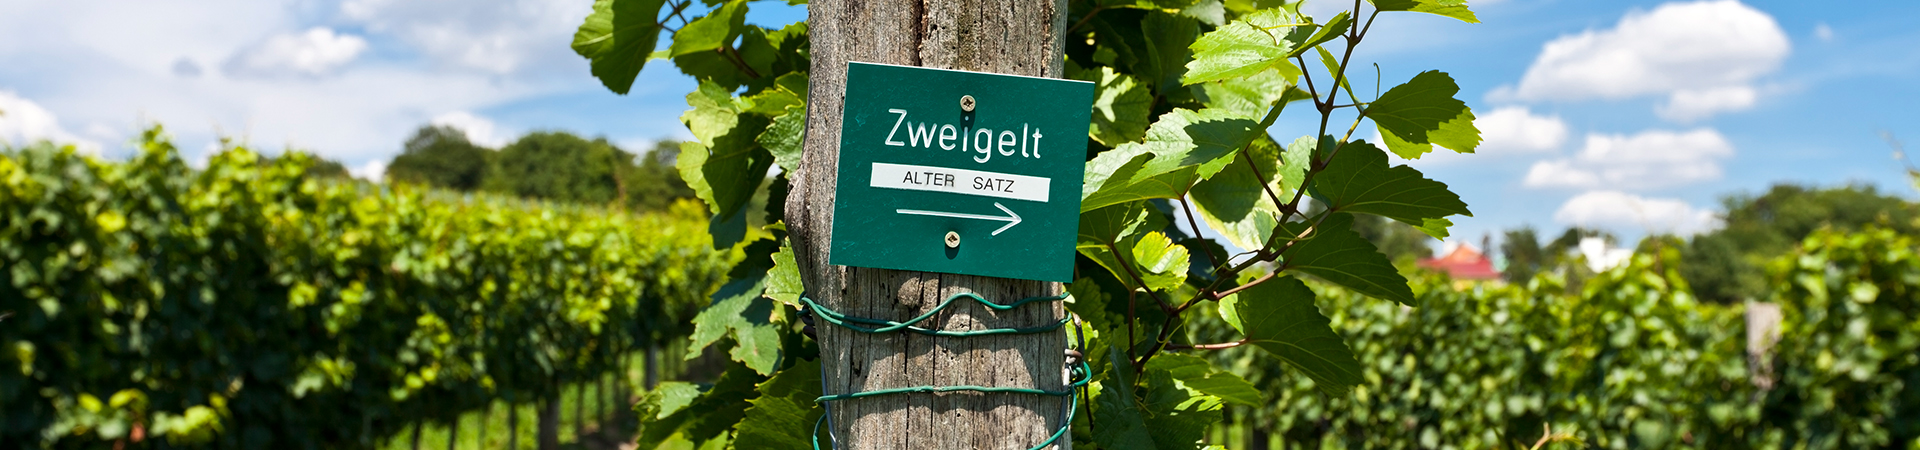 צווייגלט - Zweigelt 